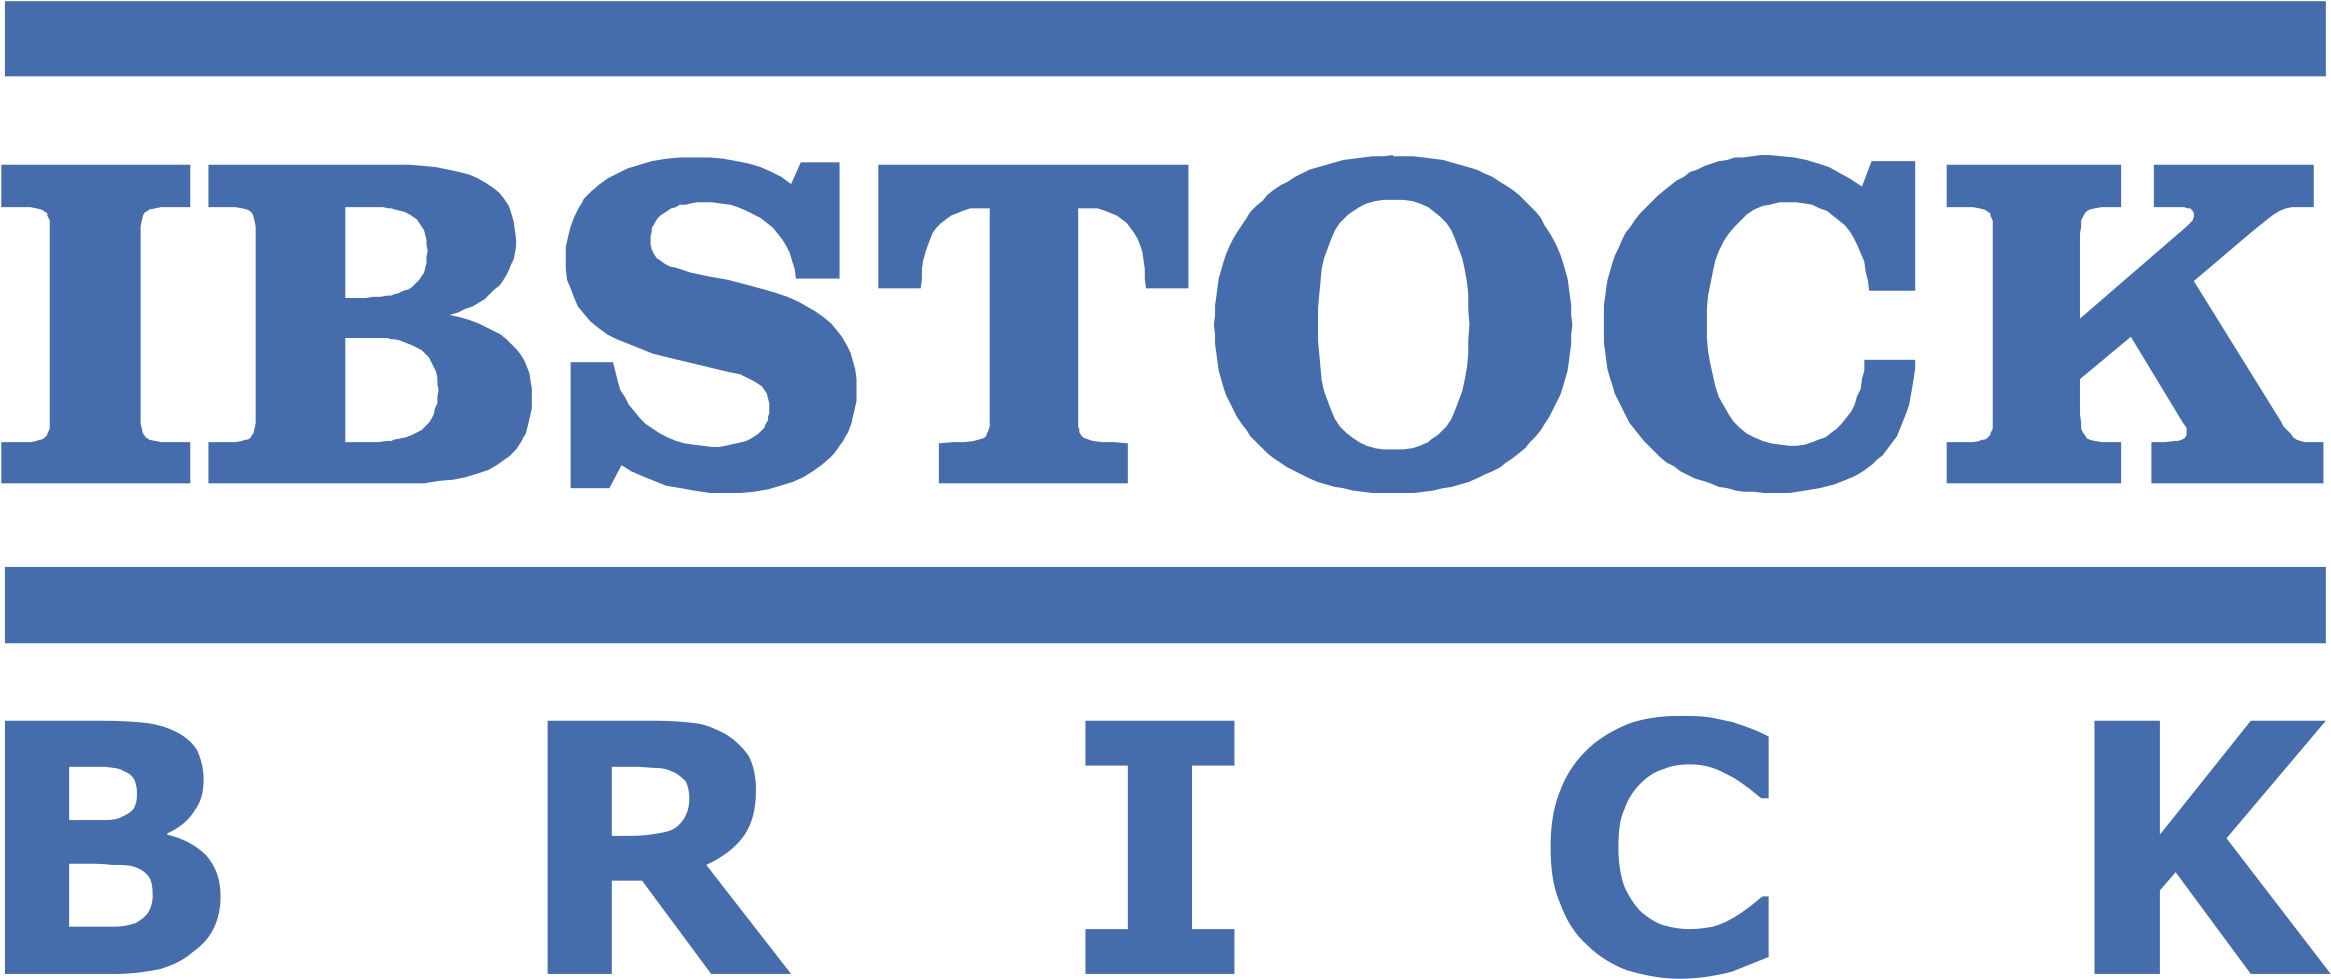 Ibstock Brick Logo Png Transparent - Ibstock Brick Clipart (2400x2400), Png Download